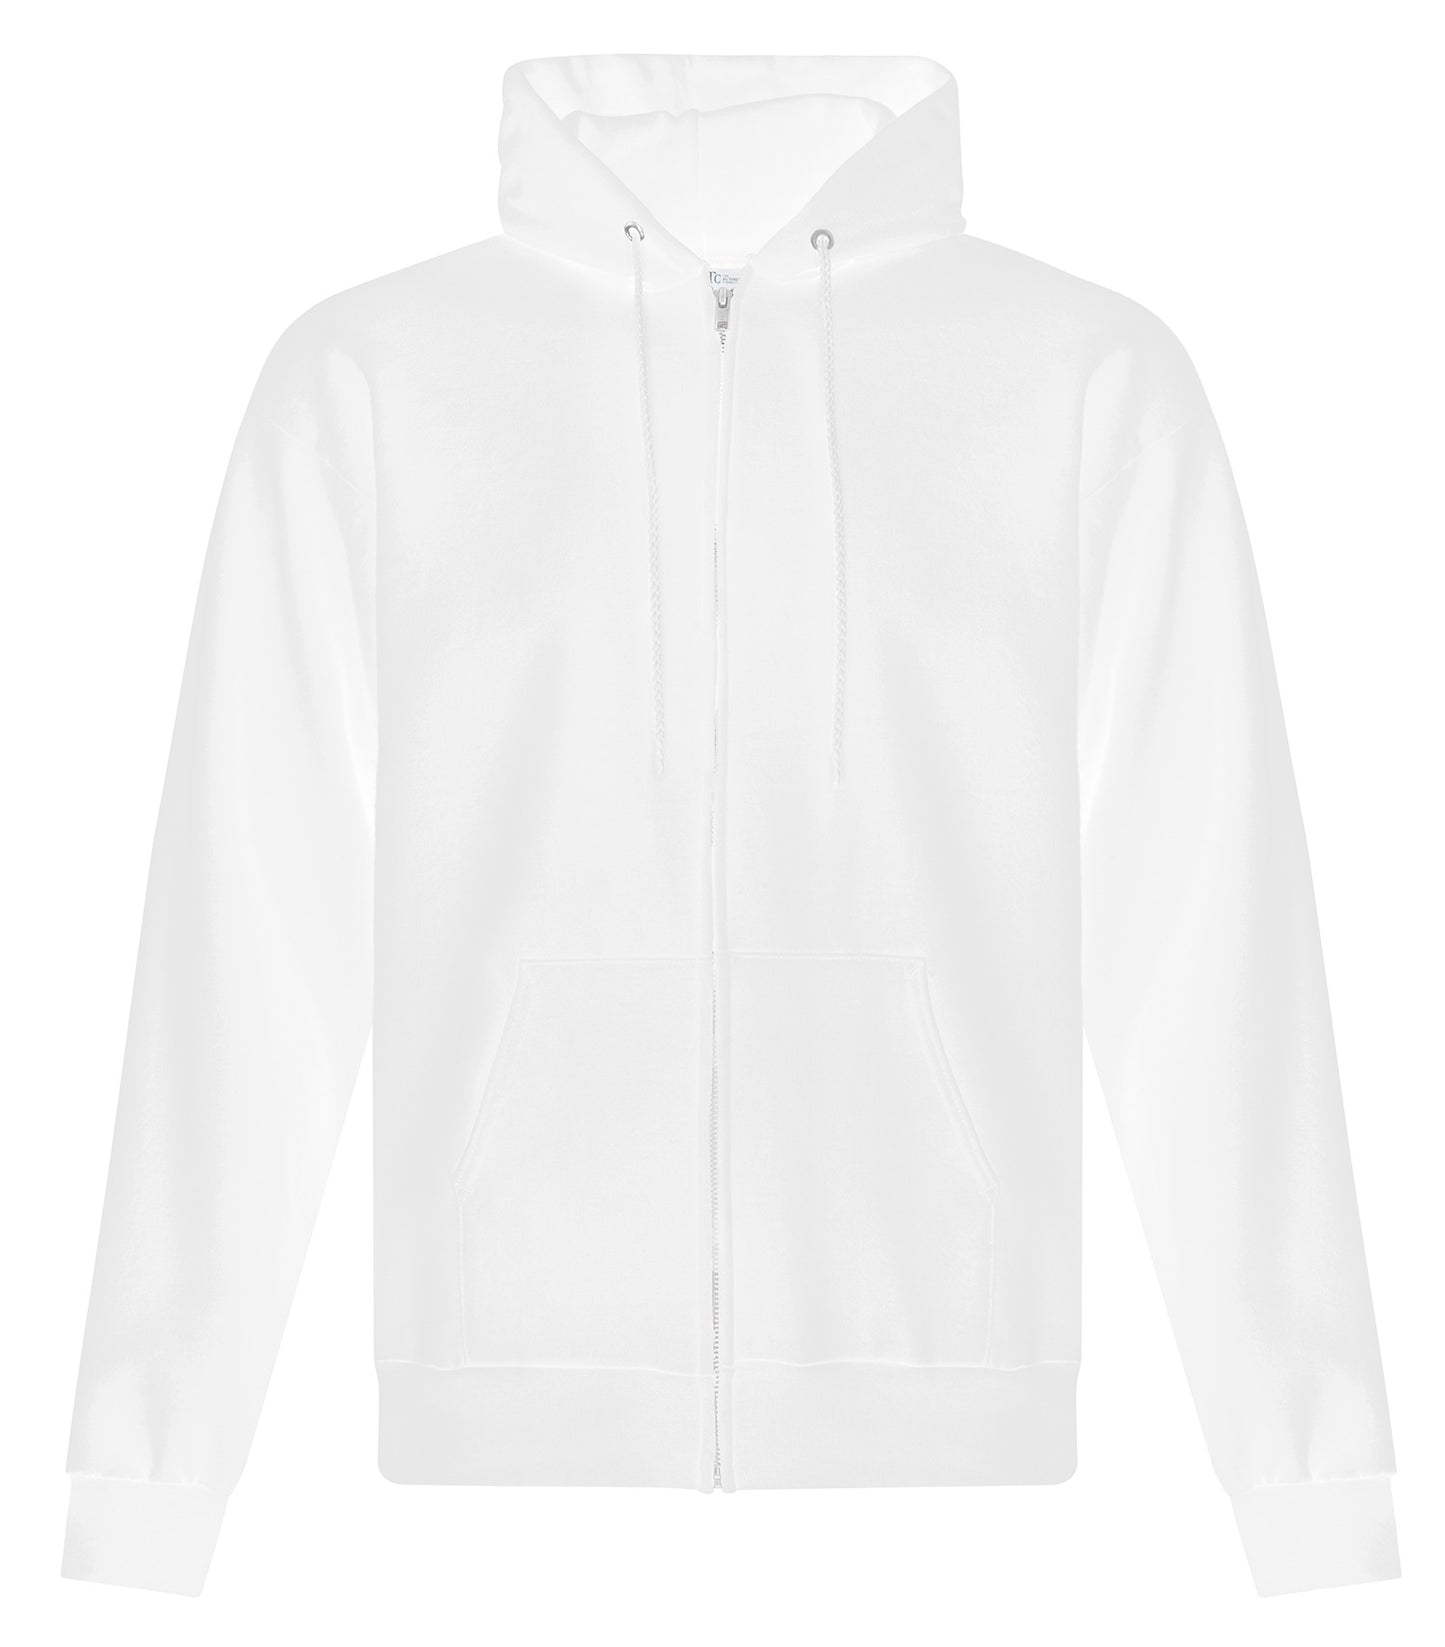 Adult, Full Zip Hooded Sweatshirt. ATCF2600